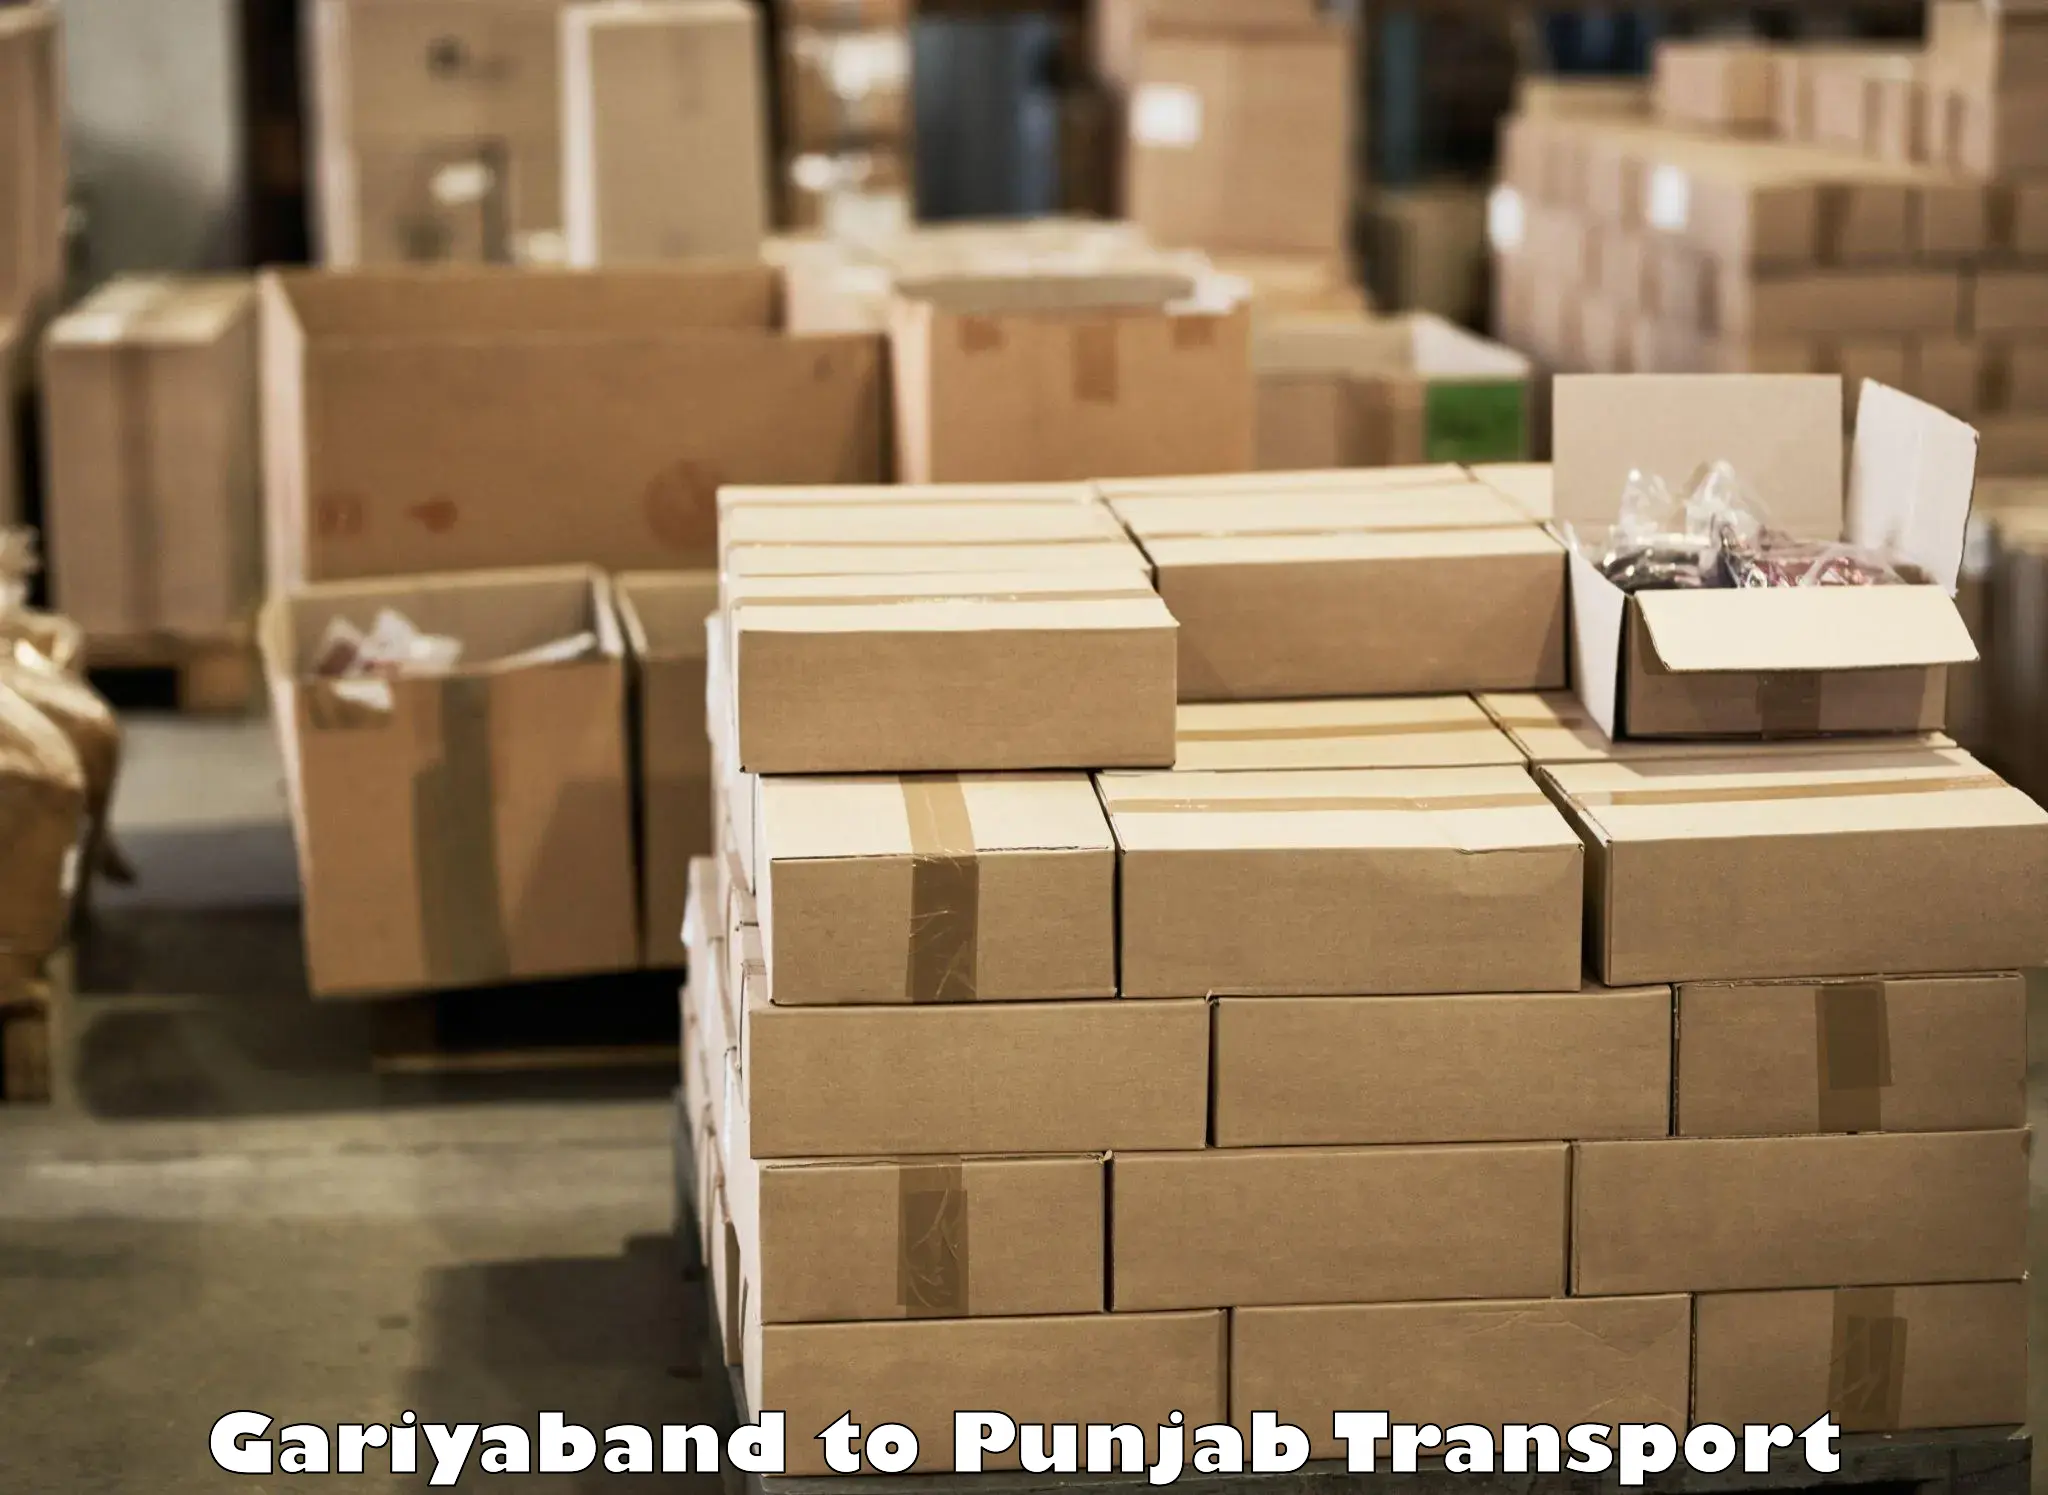 Vehicle parcel service Gariyaband to Punjab